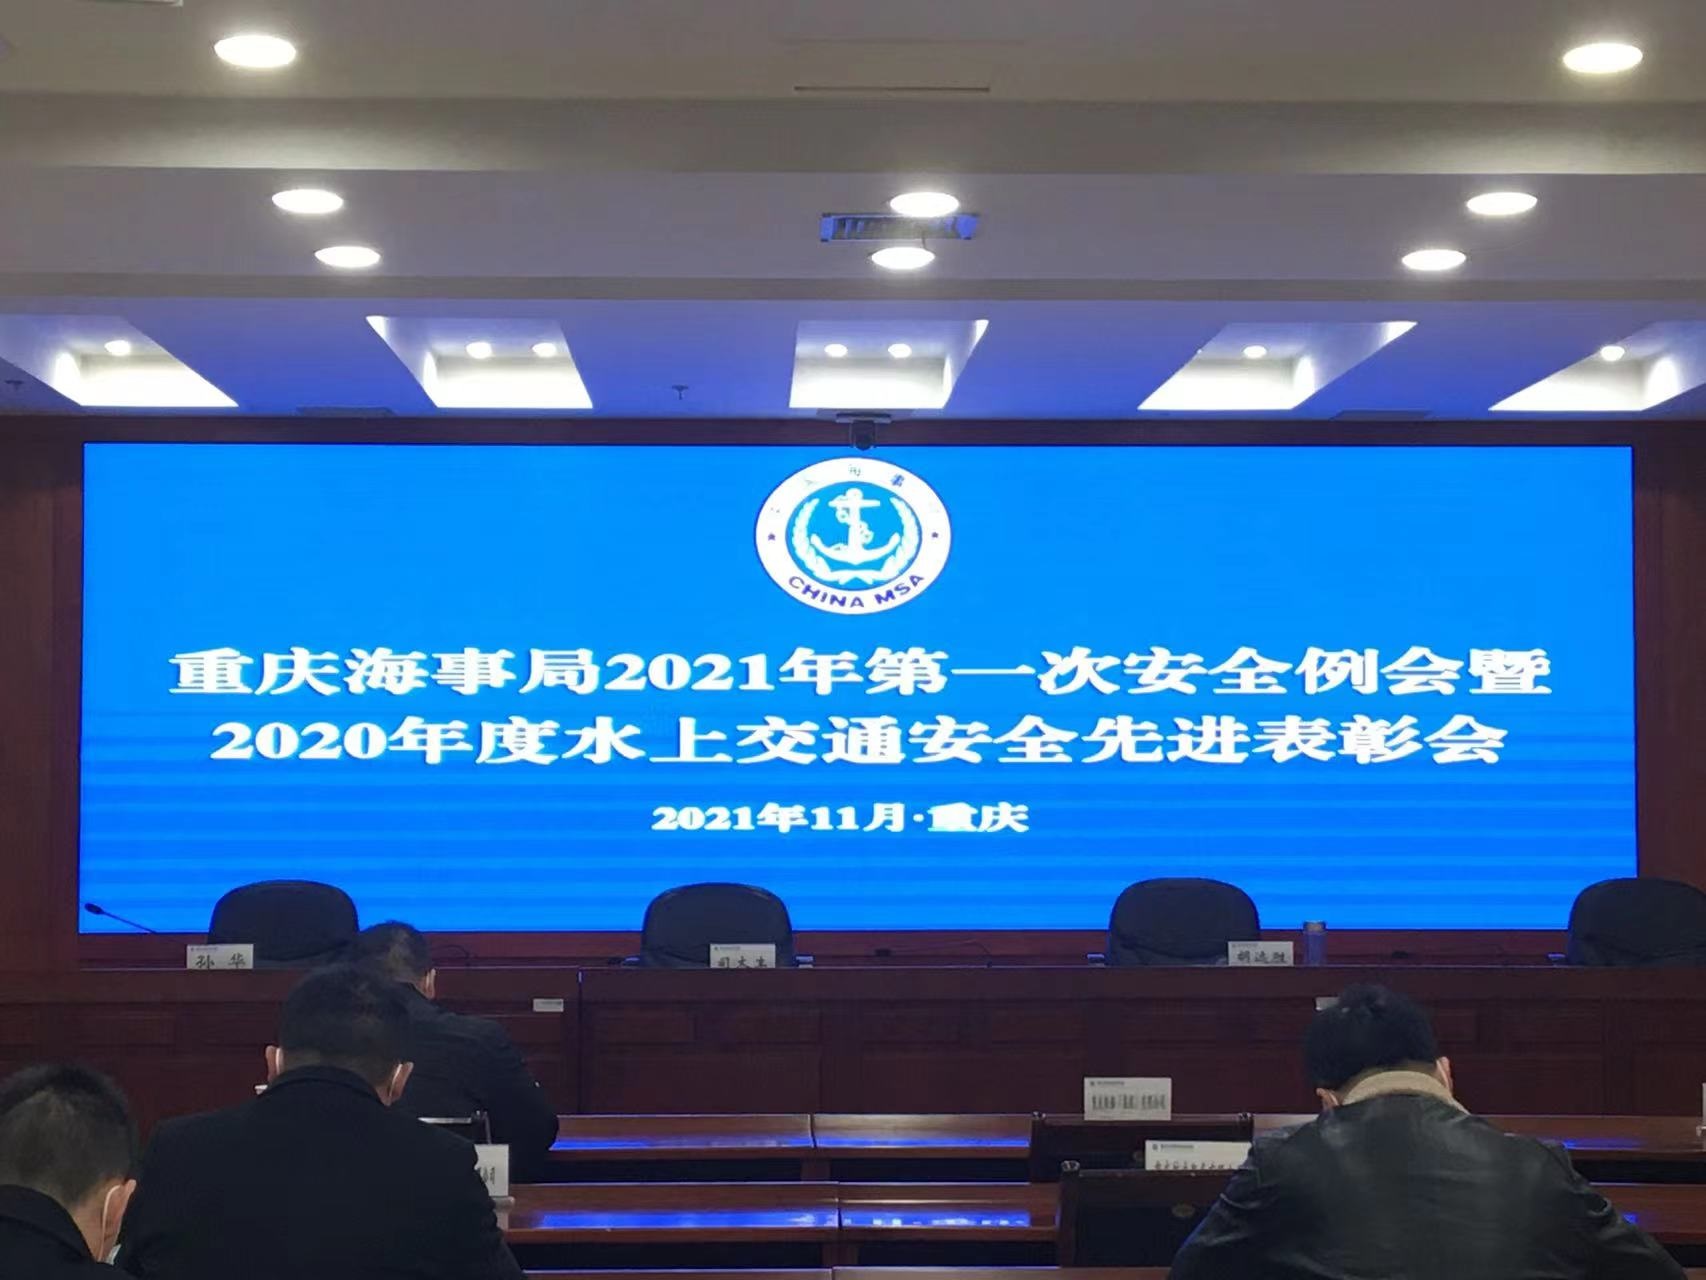  关于落实重庆海事局2021年水上交通安全会议精神及今冬明春安全工作部署的通知